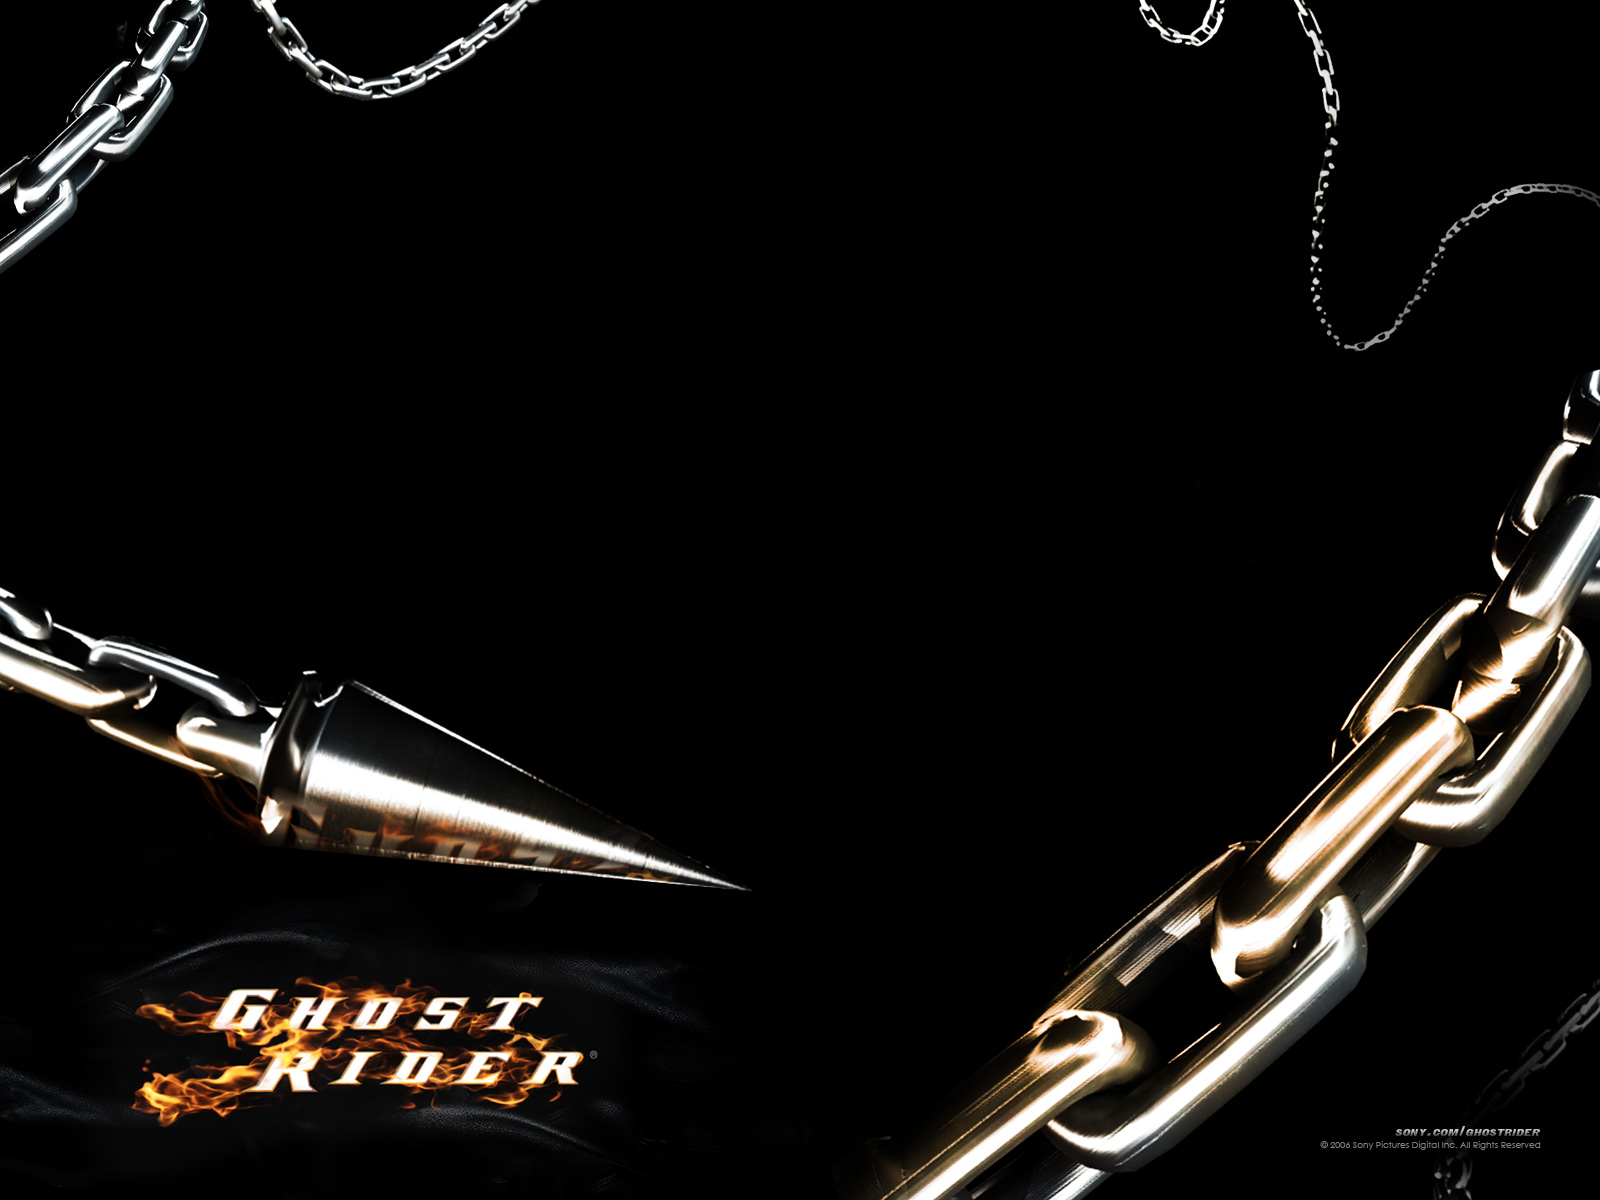 壁纸1600x1200魔鬼骑士Ghost Rider宽屏壁纸 1600 1200 壁纸5壁纸 魔鬼骑士Ghost壁纸 魔鬼骑士Ghost图片 魔鬼骑士Ghost素材 影视壁纸 影视图库 影视图片素材桌面壁纸